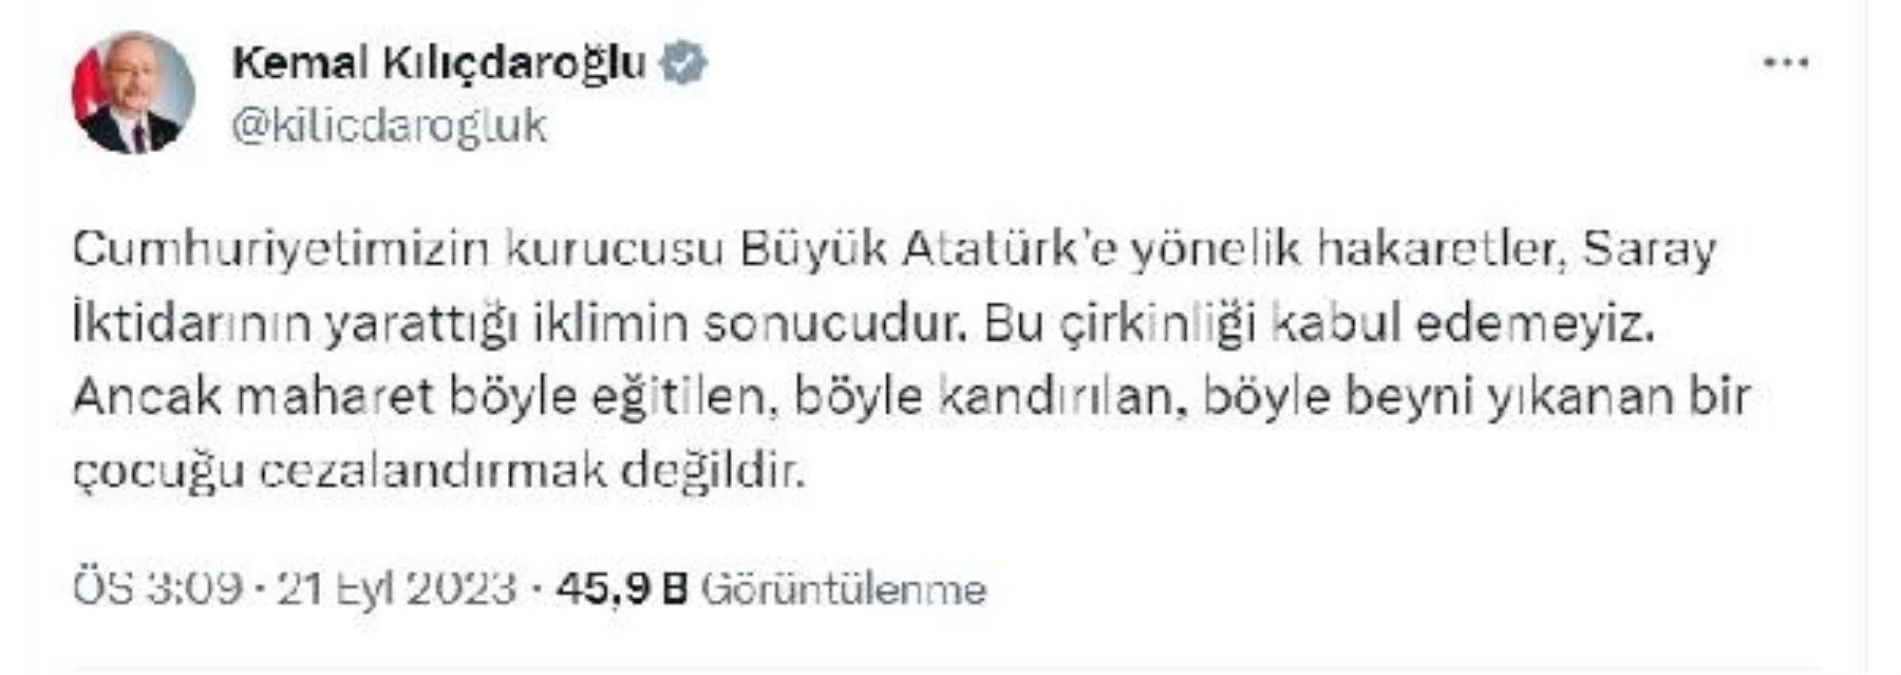 Kılıçdaroğlu: Atatürk\'e hakaretler Saray İktidarının sonucudur